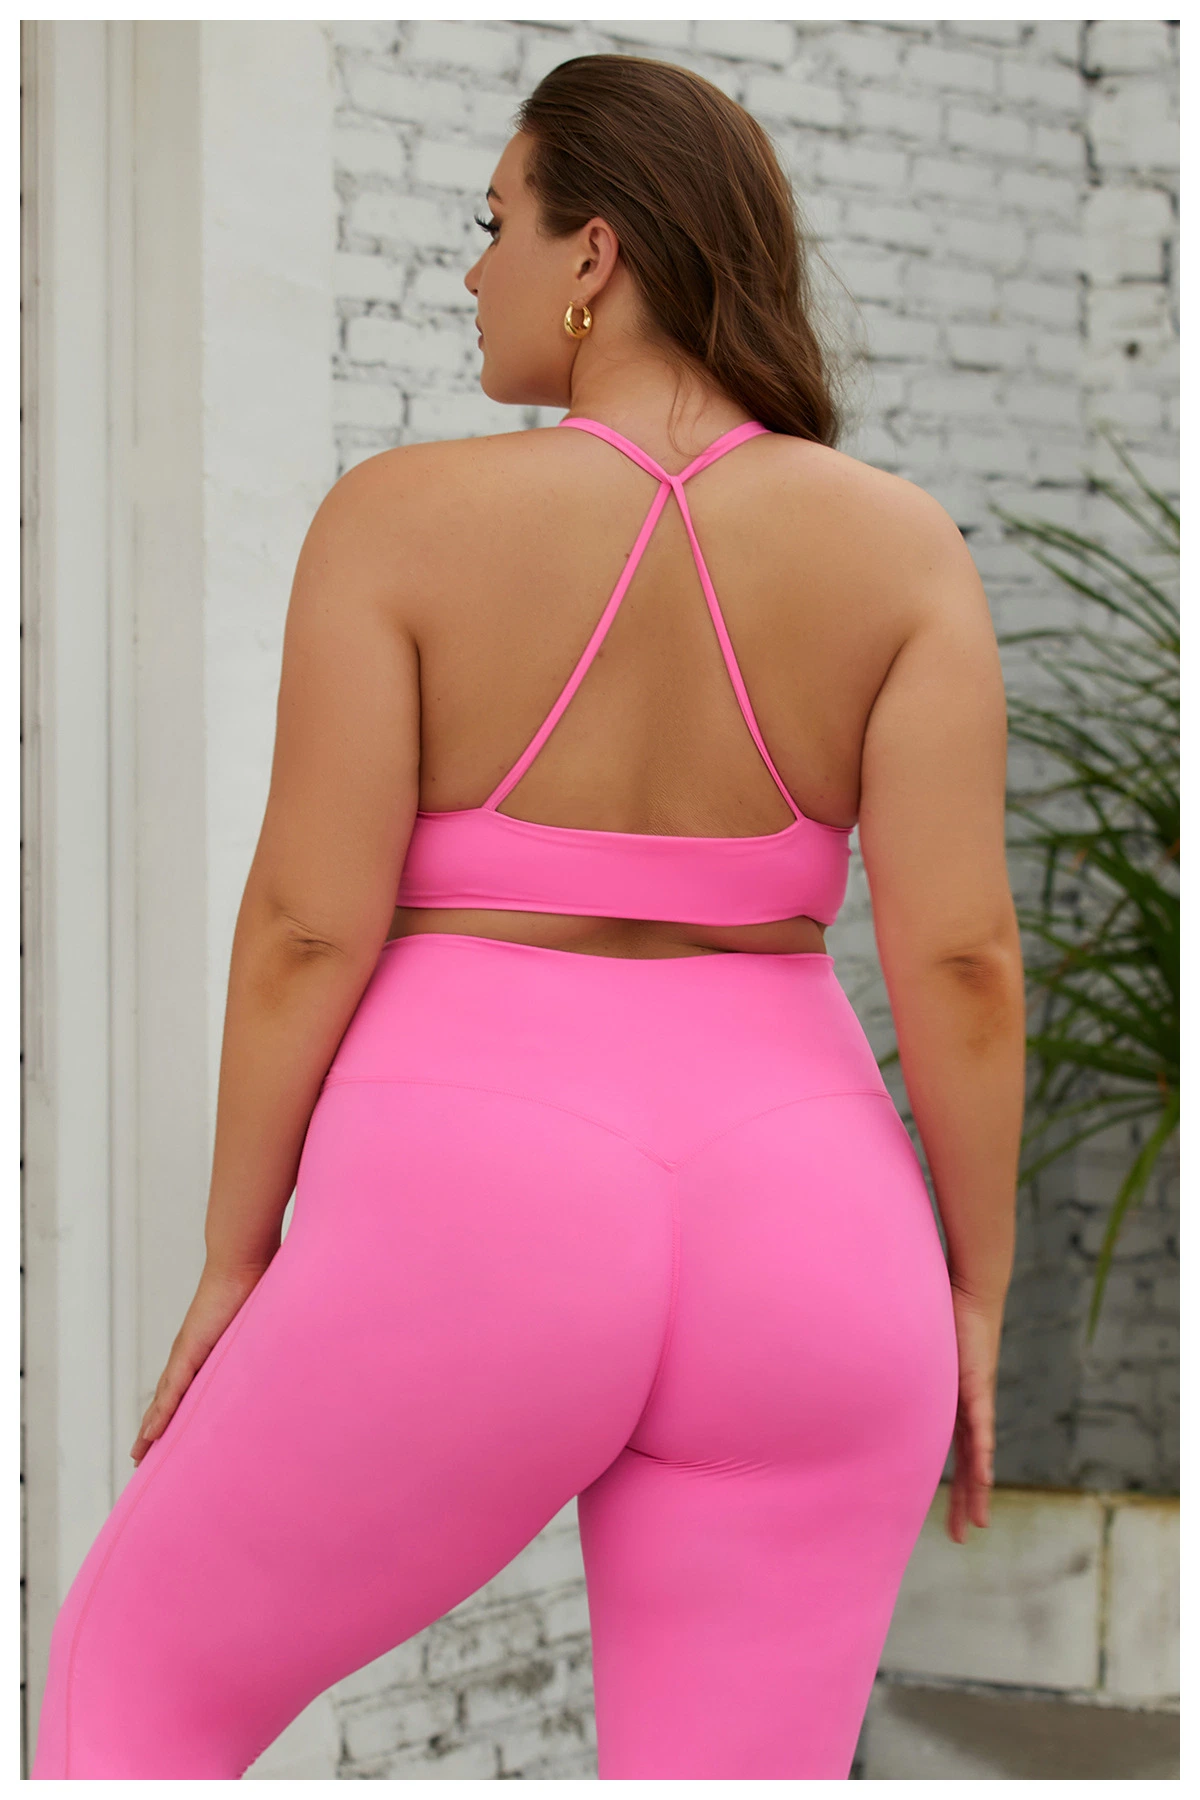 XL 3XL Plus Size ropa de gimnasio Yoga Wear Sujetador deportivo Set transpirable Sportswear para mujer 2 piezas pantalones de entrenamiento conjunto